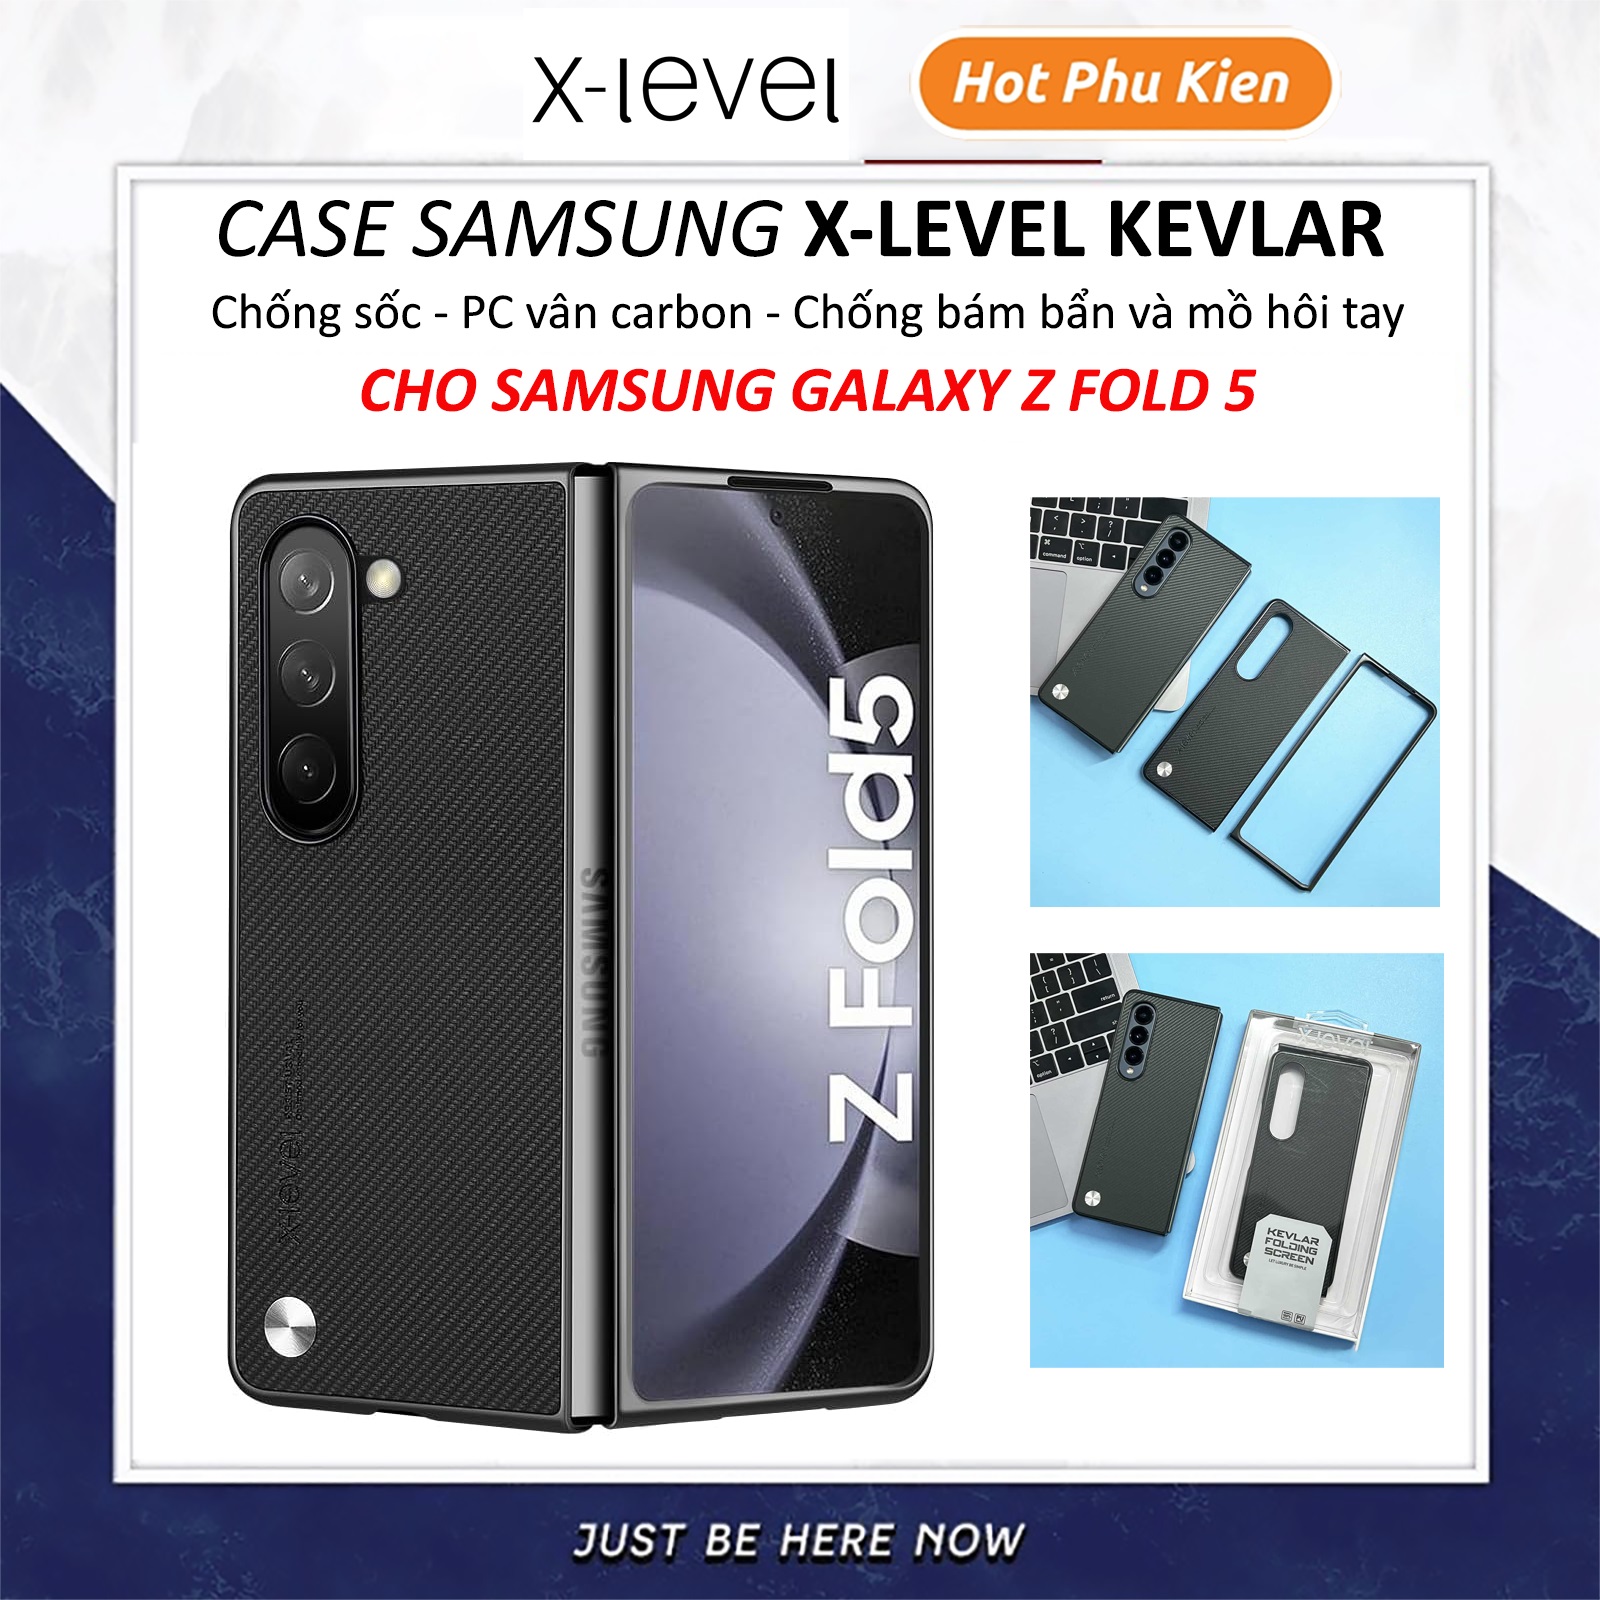 Ốp lưng chống sốc cho Samsung Galaxy Z Fold 5 hiệu X-Level Kevlar Folding Screen - chất liệu vân carbon cao cấp, trang bị khả năng chống va đập cực tốt - hàng nhập khẩu